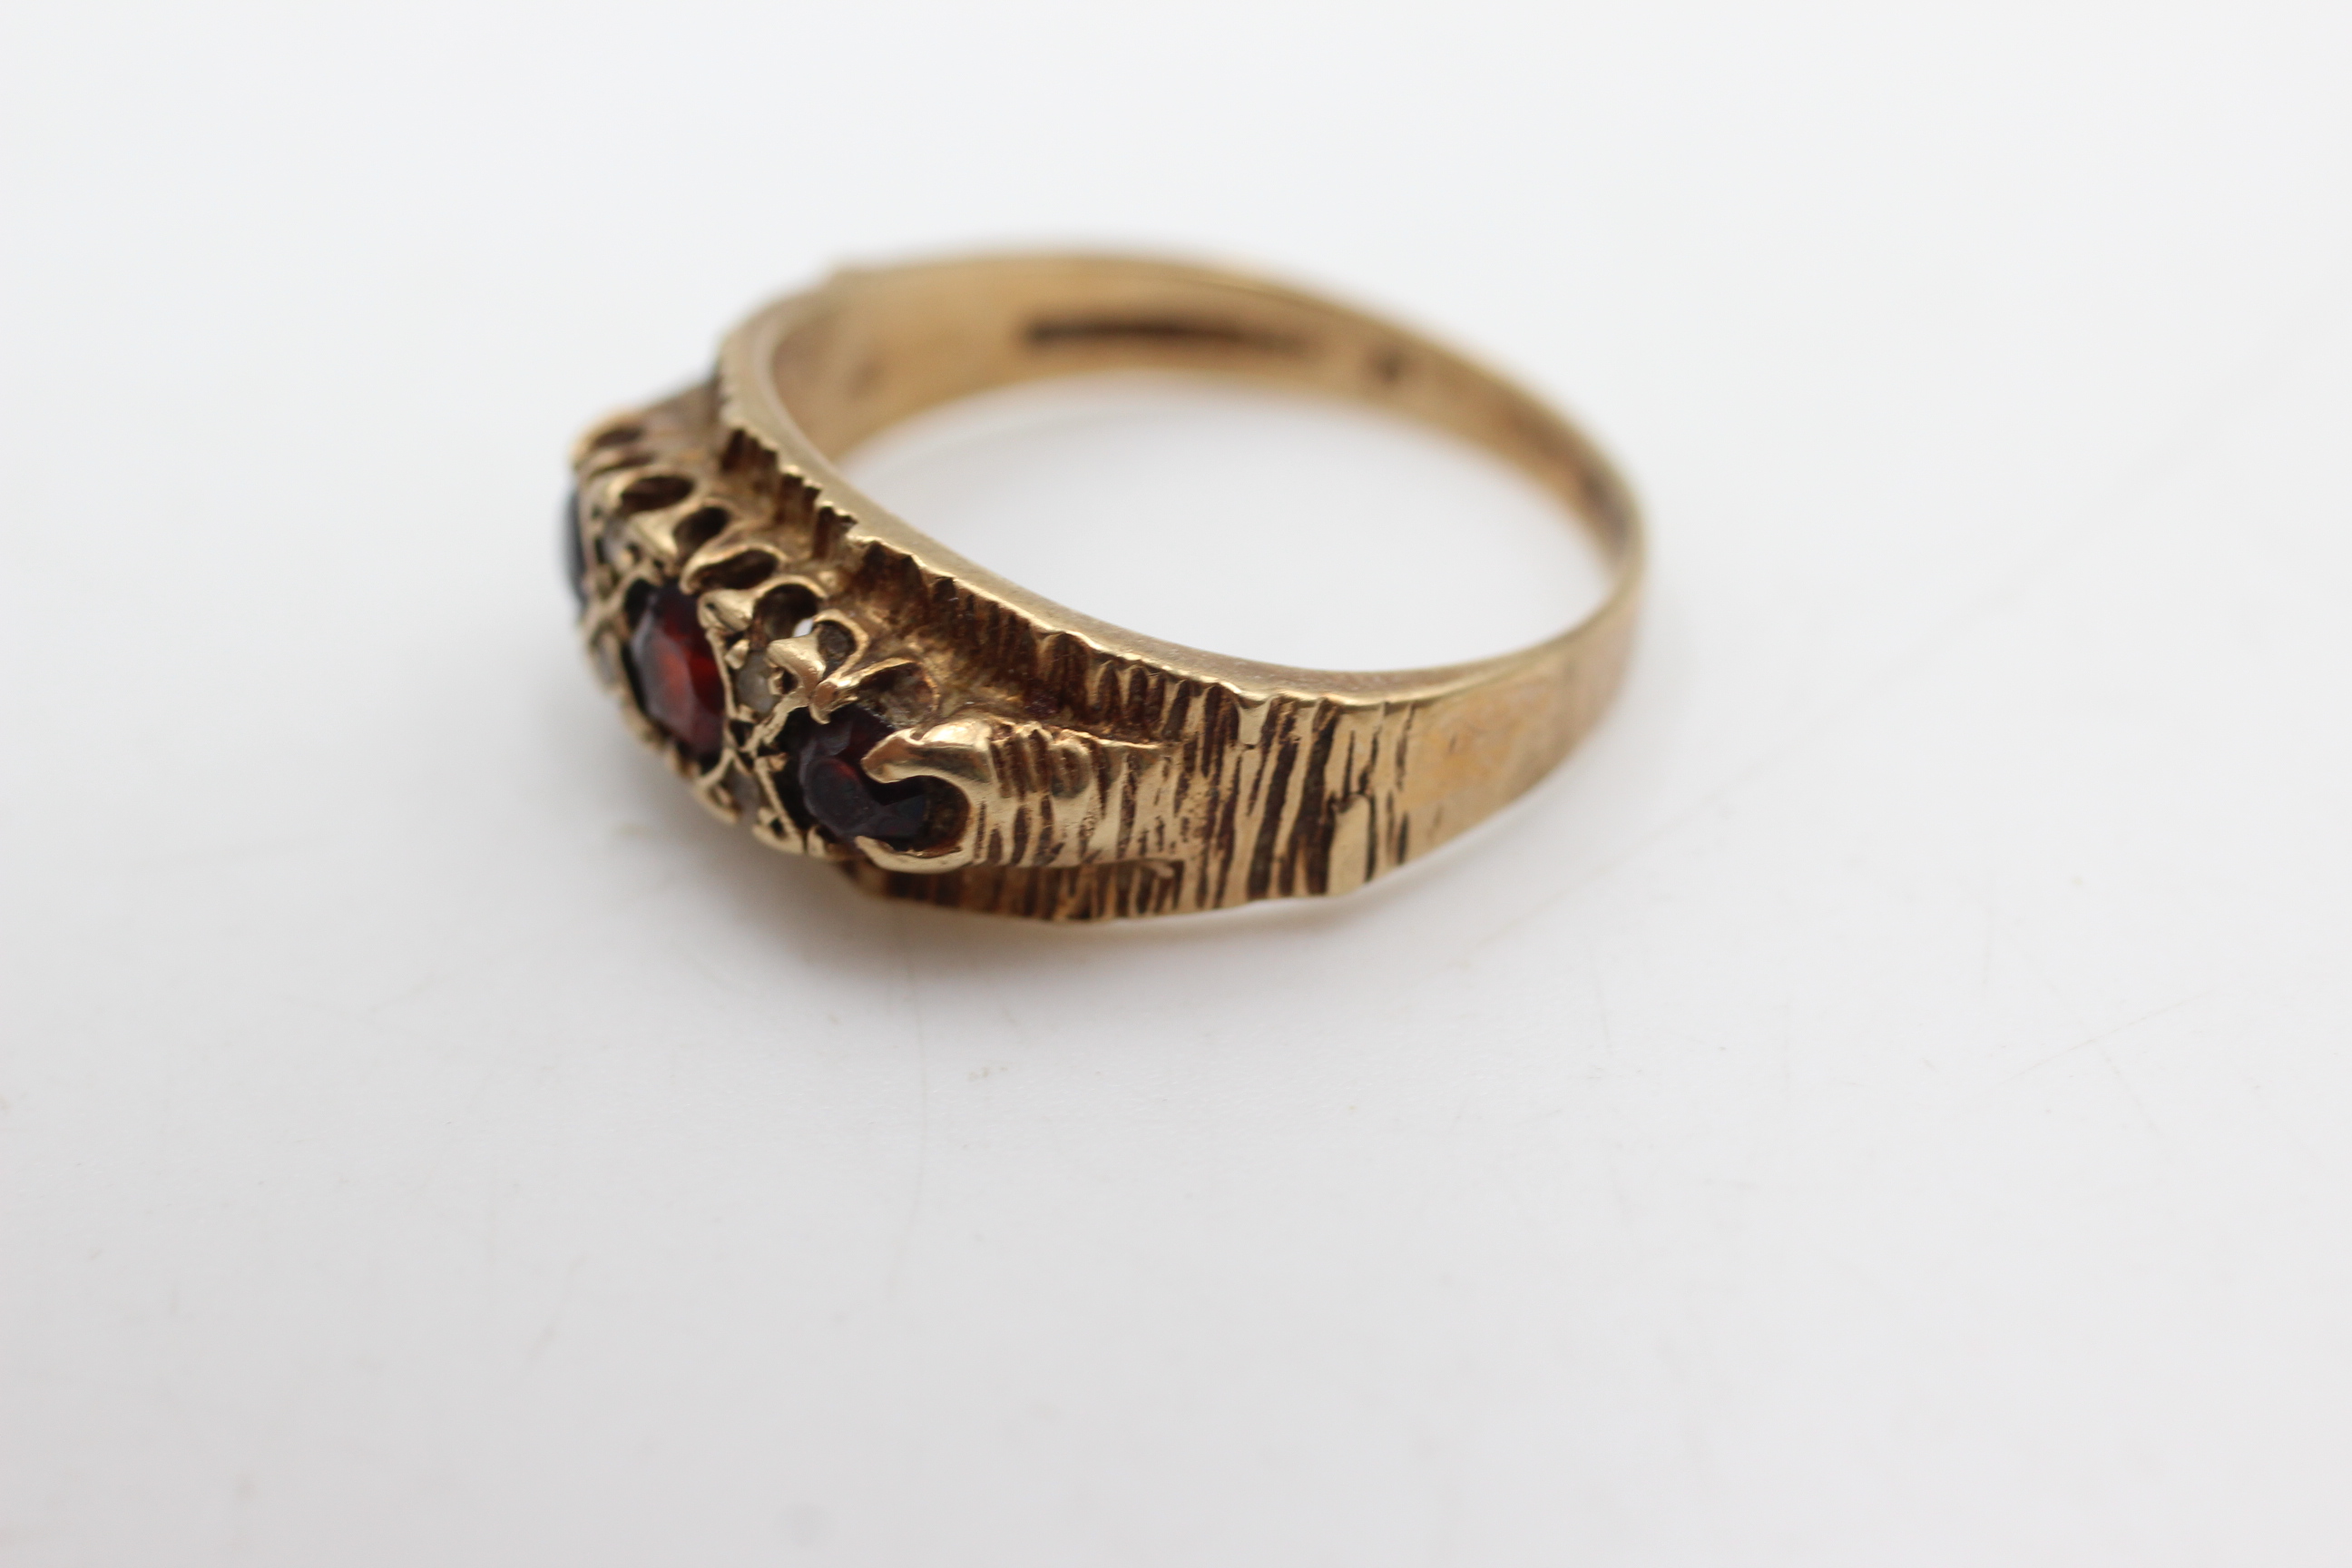 9ct gold garnet & clear gemstone etched flush set ring (4.1g) - Image 3 of 4